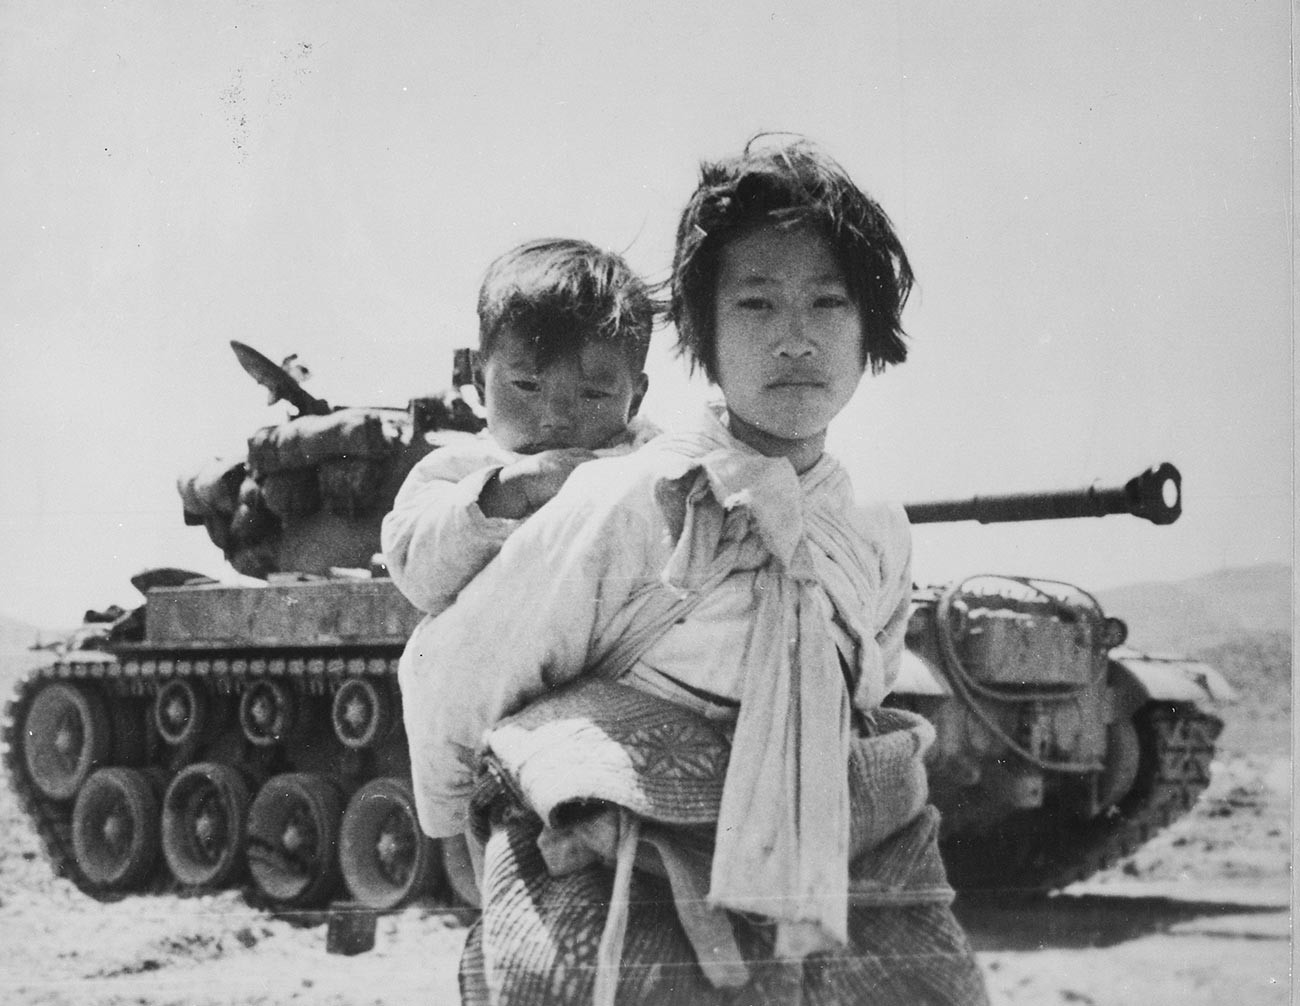 Guerra da Coreia.

